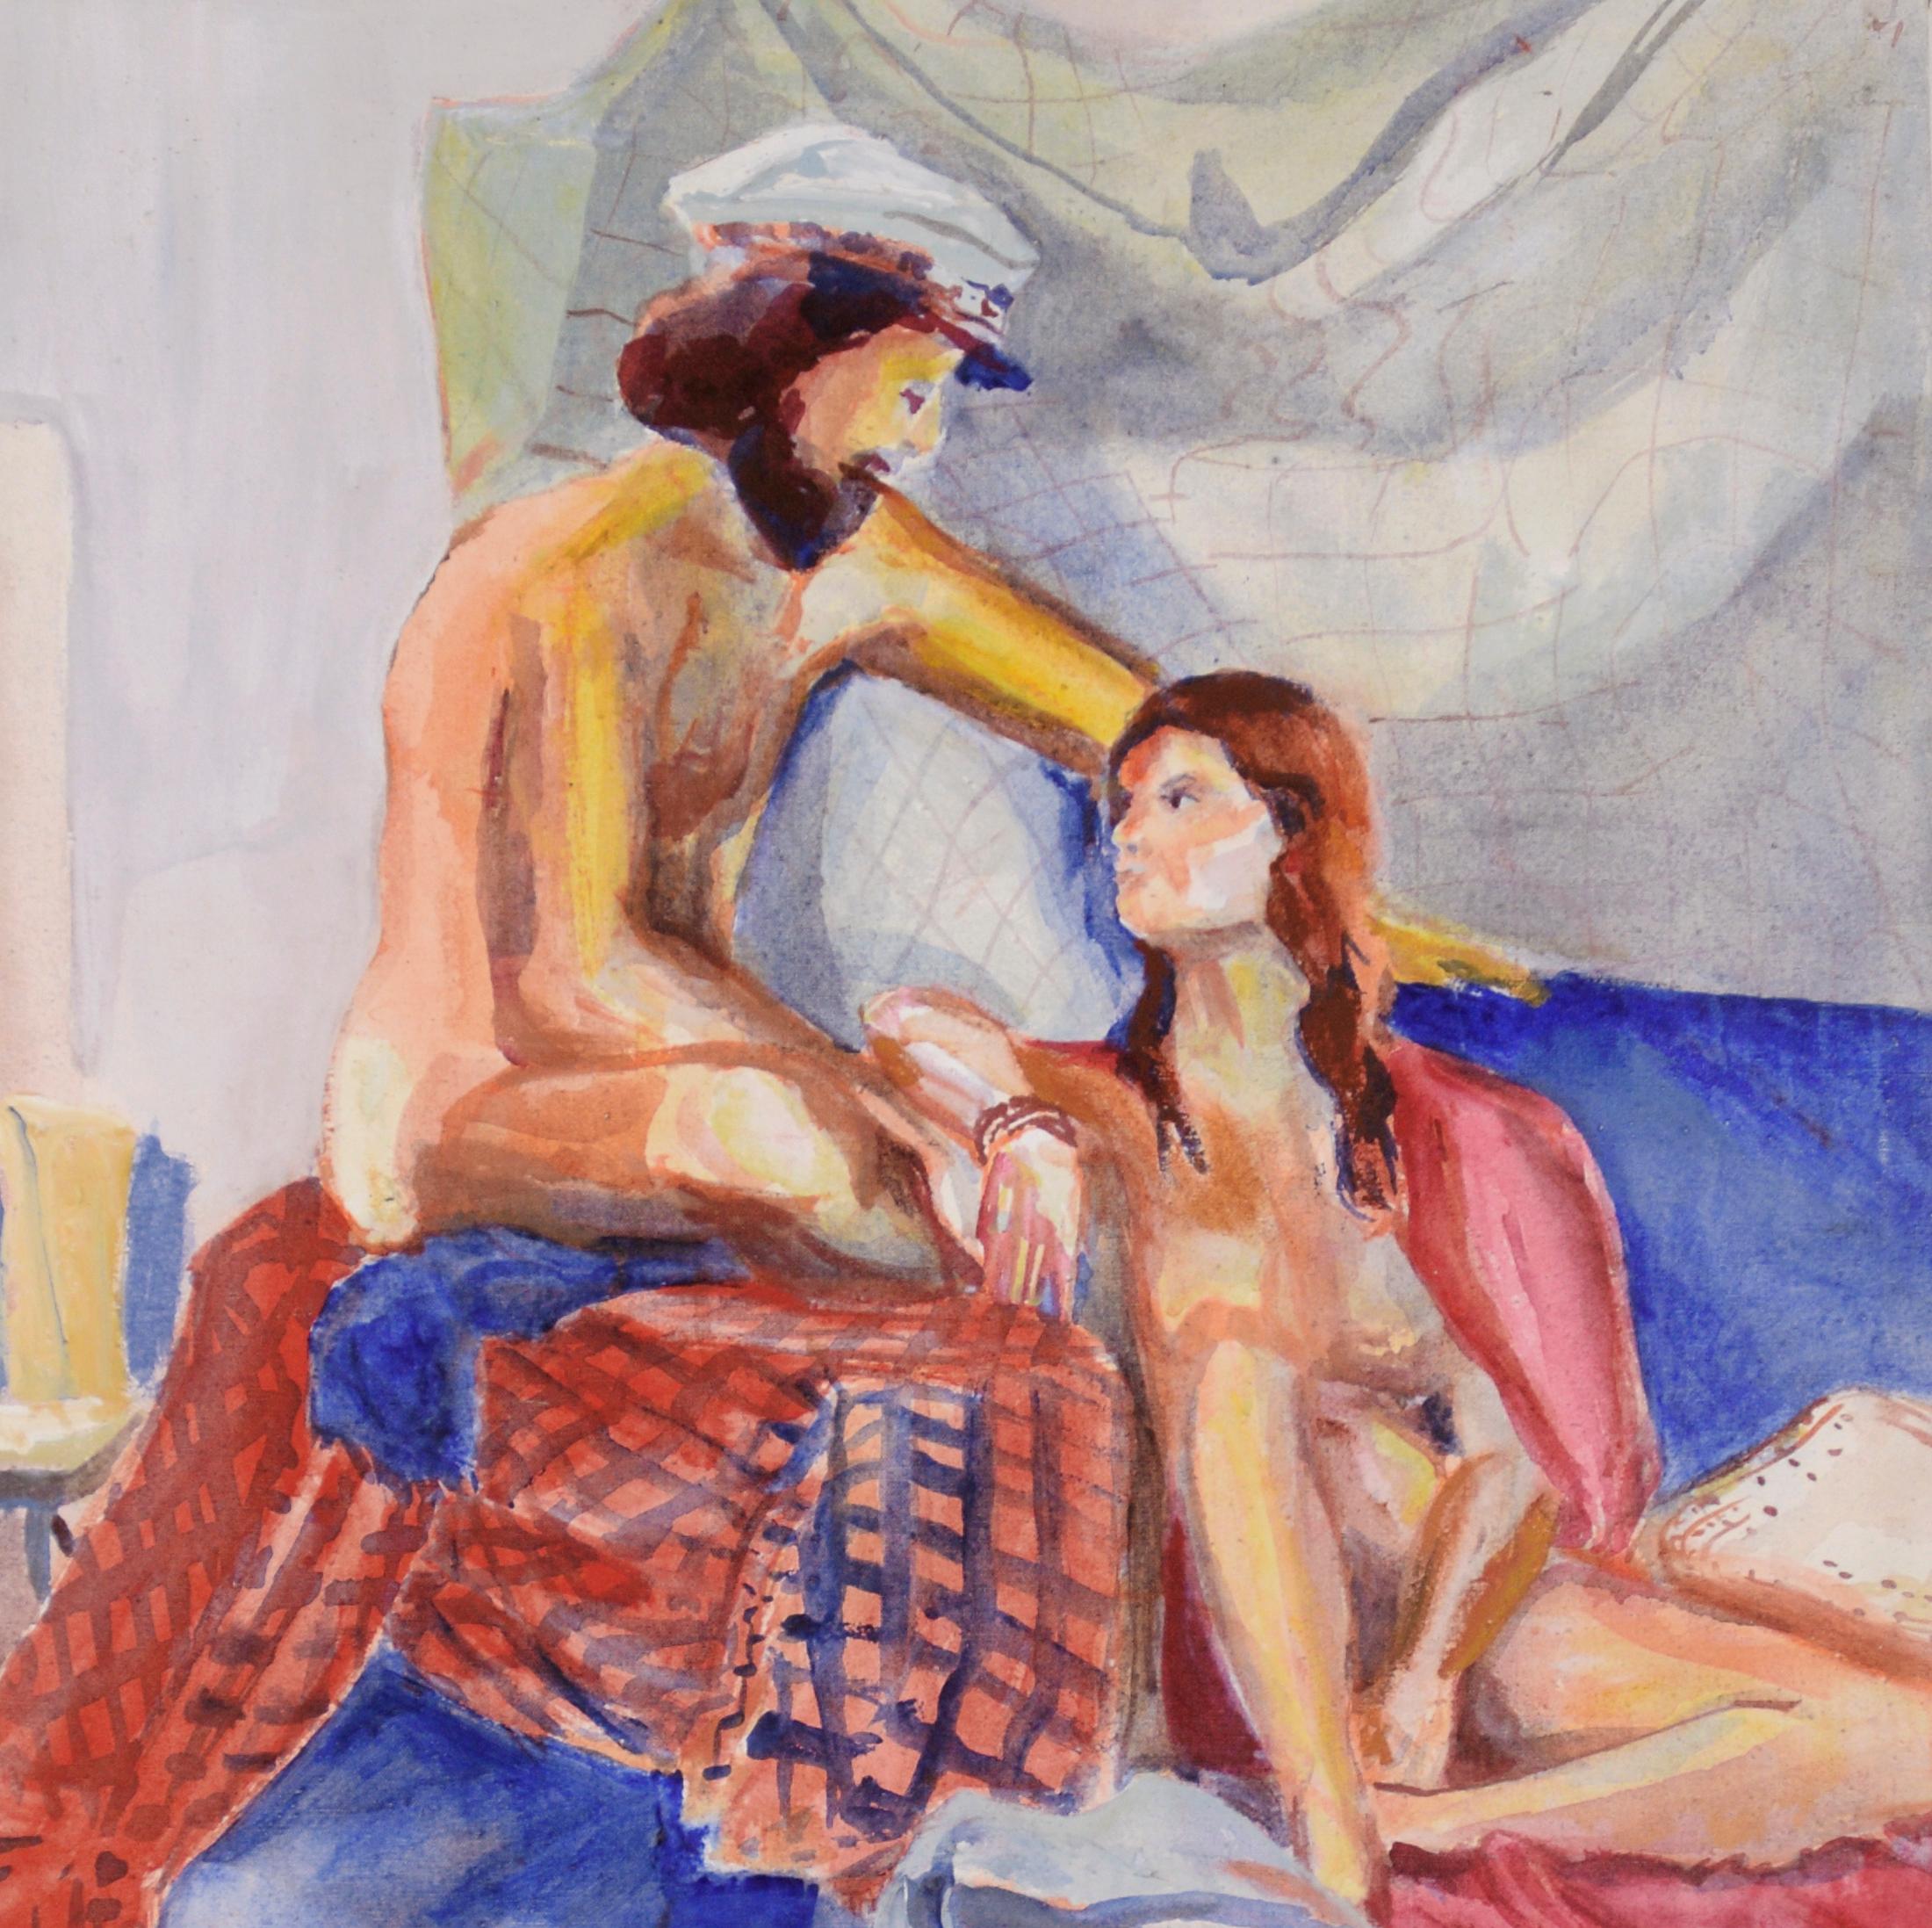 Une muse - Étude figurative à l'huile sur toile

Un homme nu portant un chapeau de marin et regardant une femme assise sur des draps rouges et bleus par la peintre américaine Patricia Gren Hayes (née en 1932). L'homme porte un chapeau de capitaine